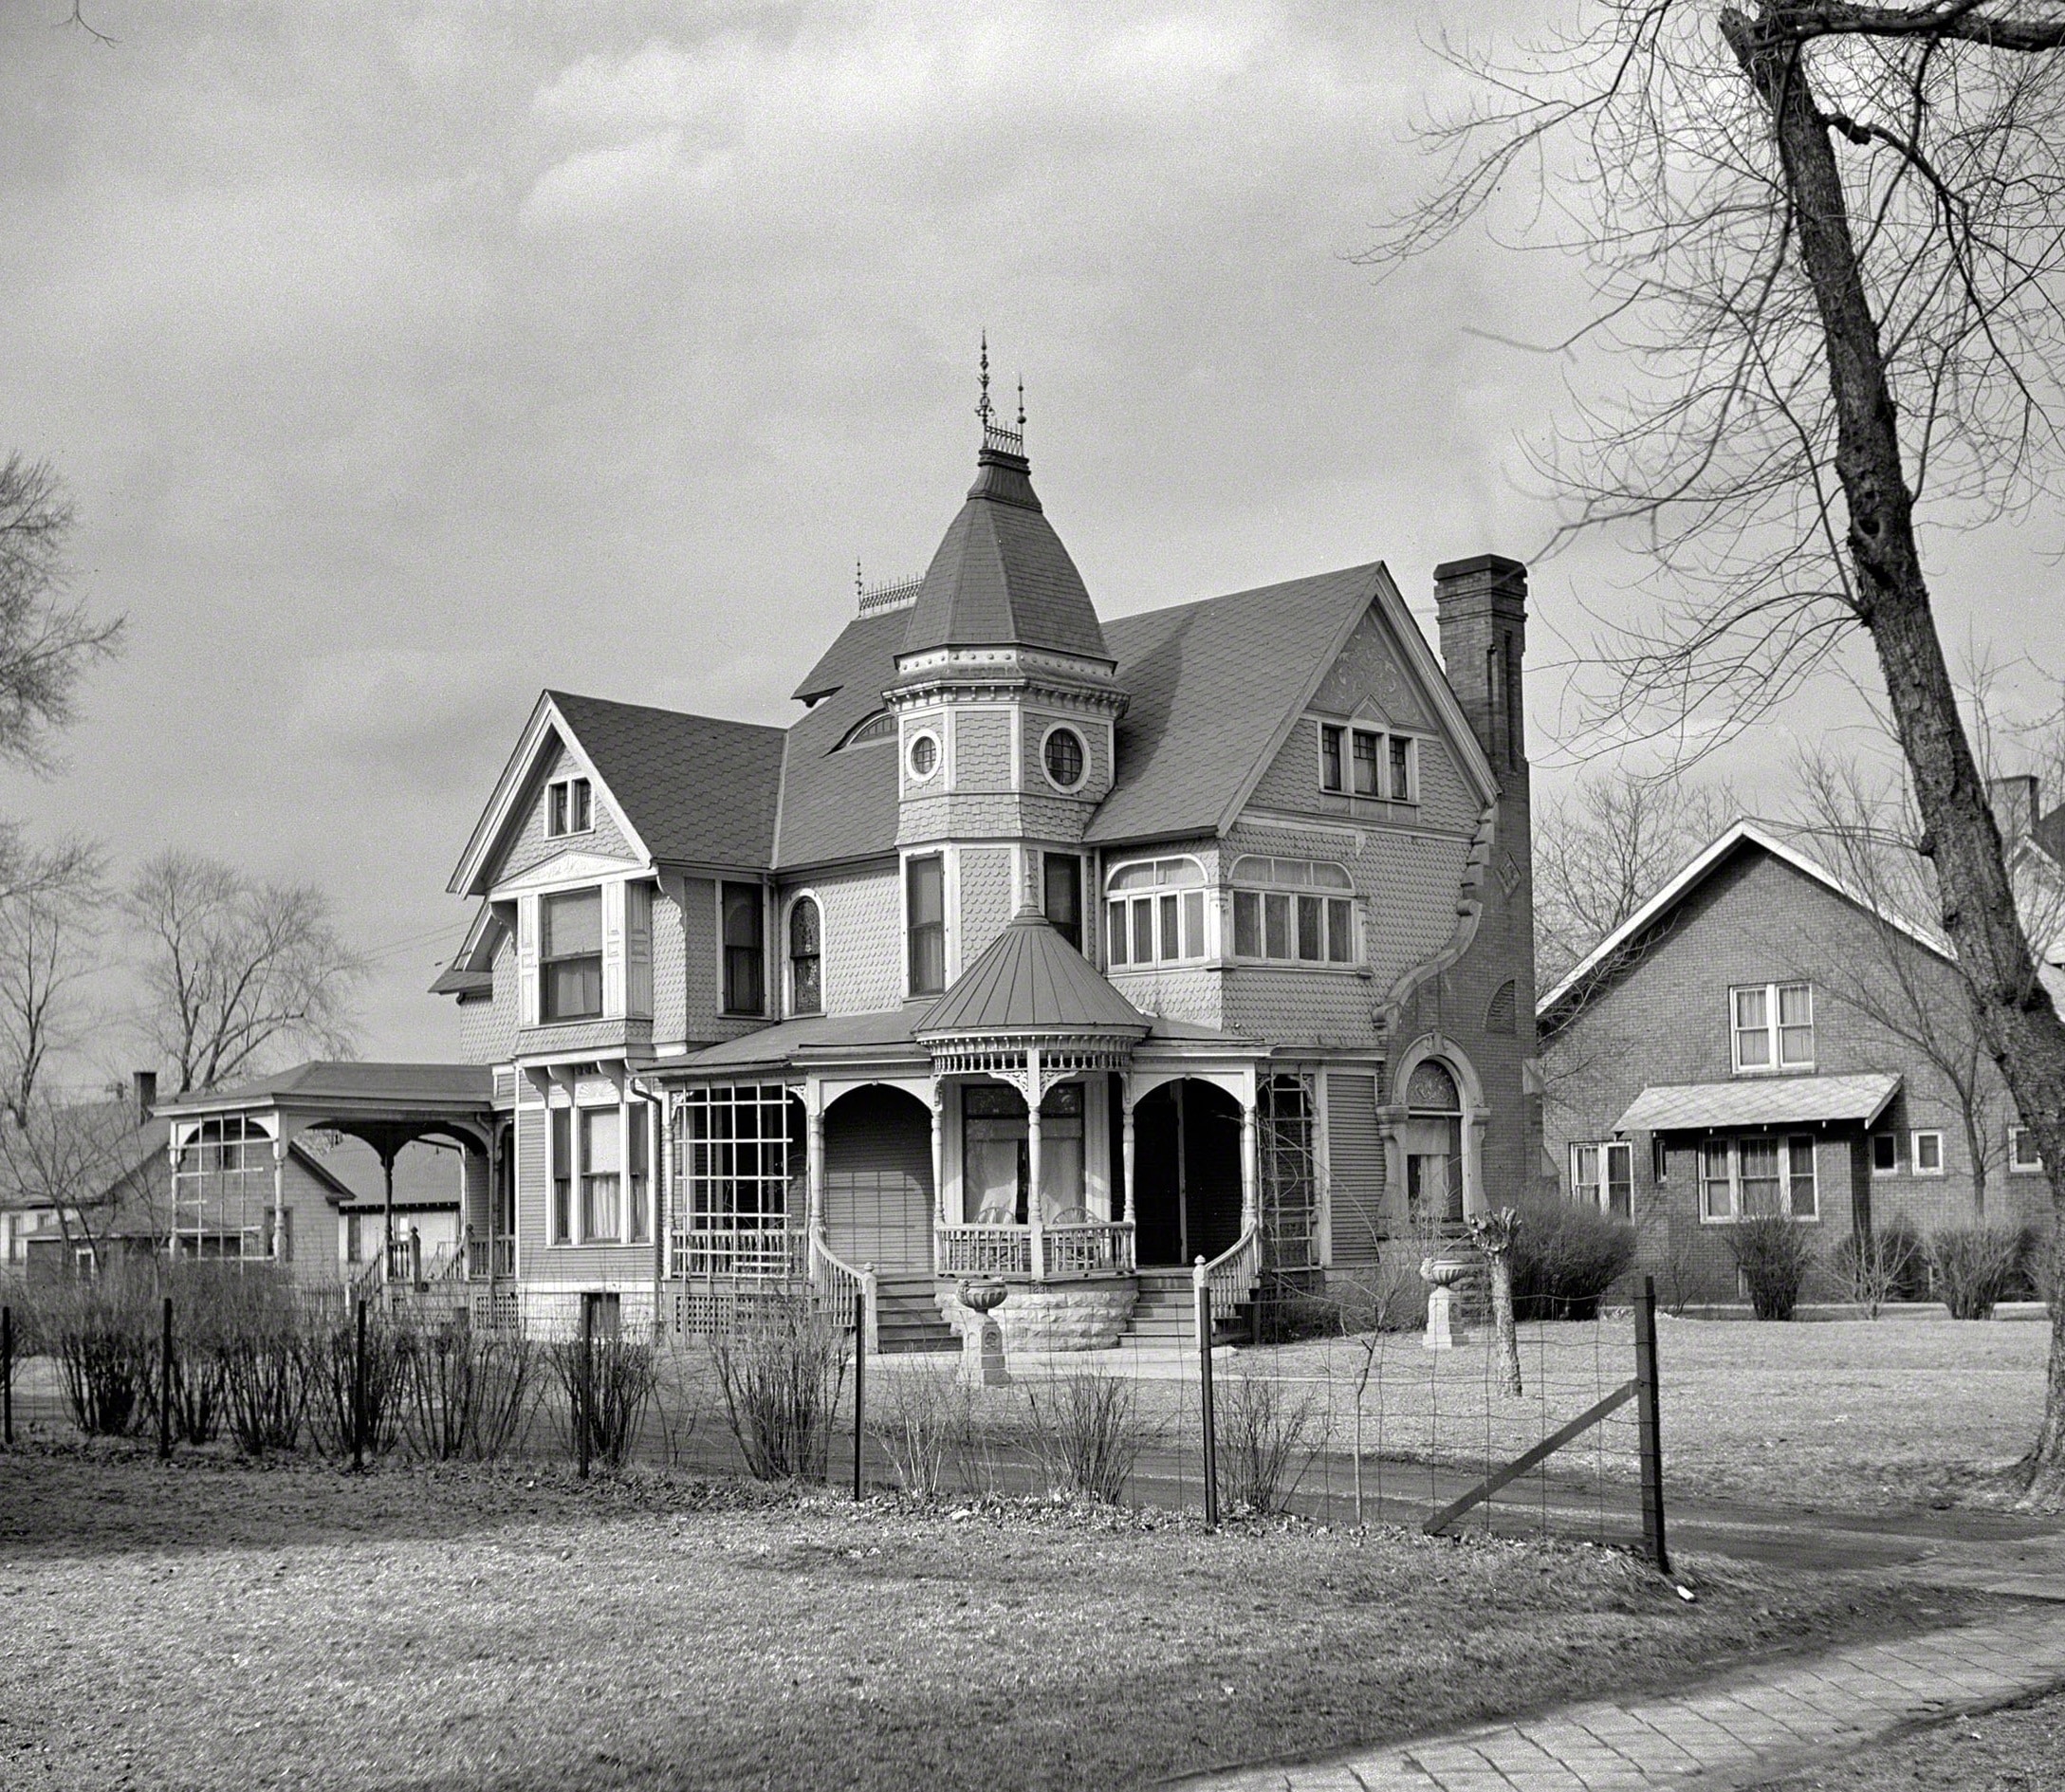 April 1937. "House in Ottawa, Illinois."